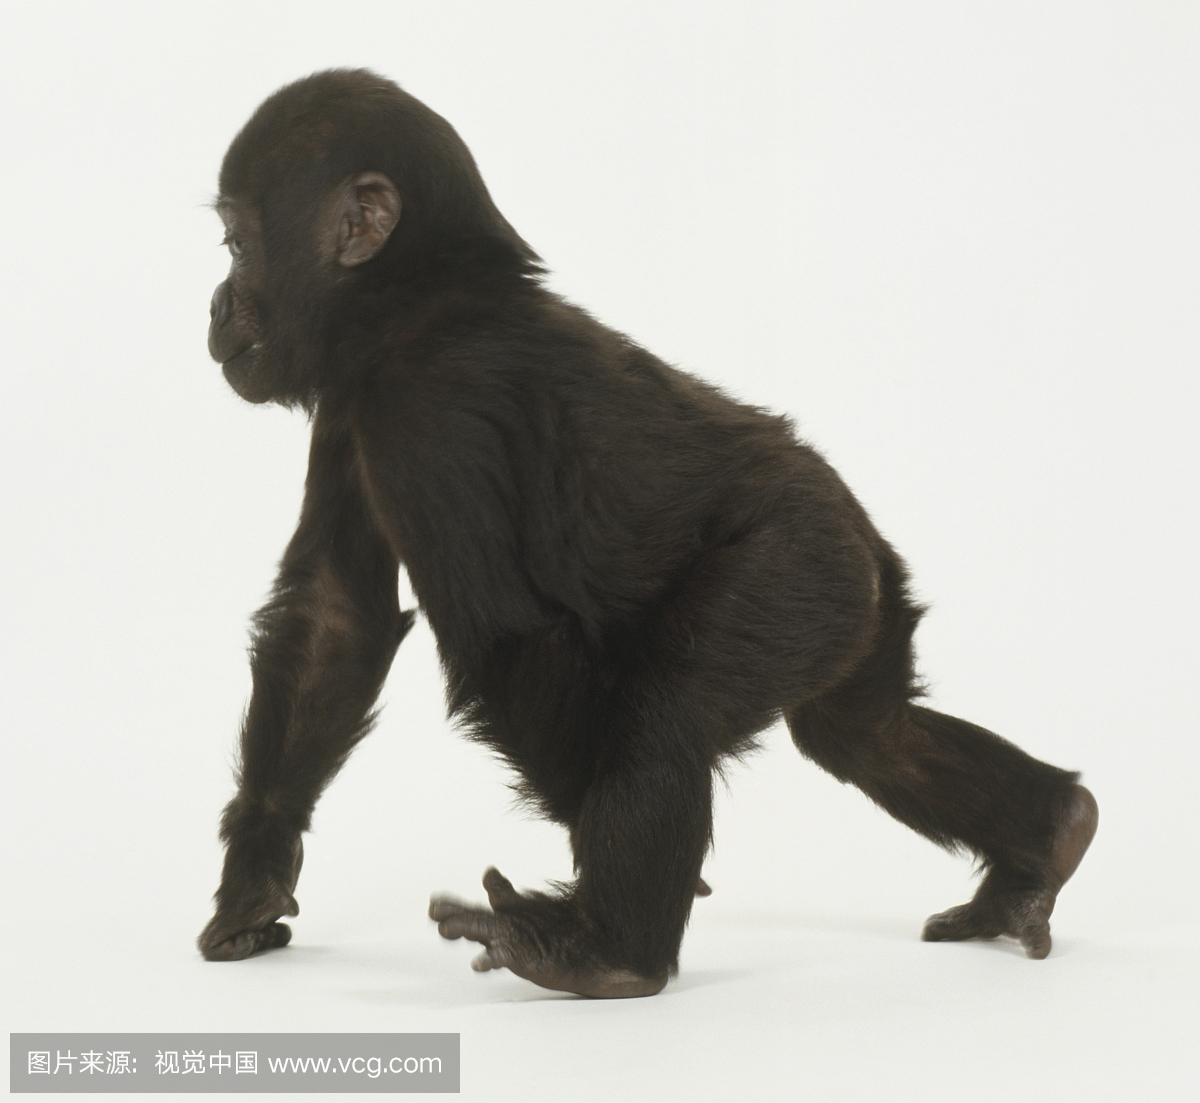 婴儿大猩猩四肢,向前走,脚趾张开,指关节在地板